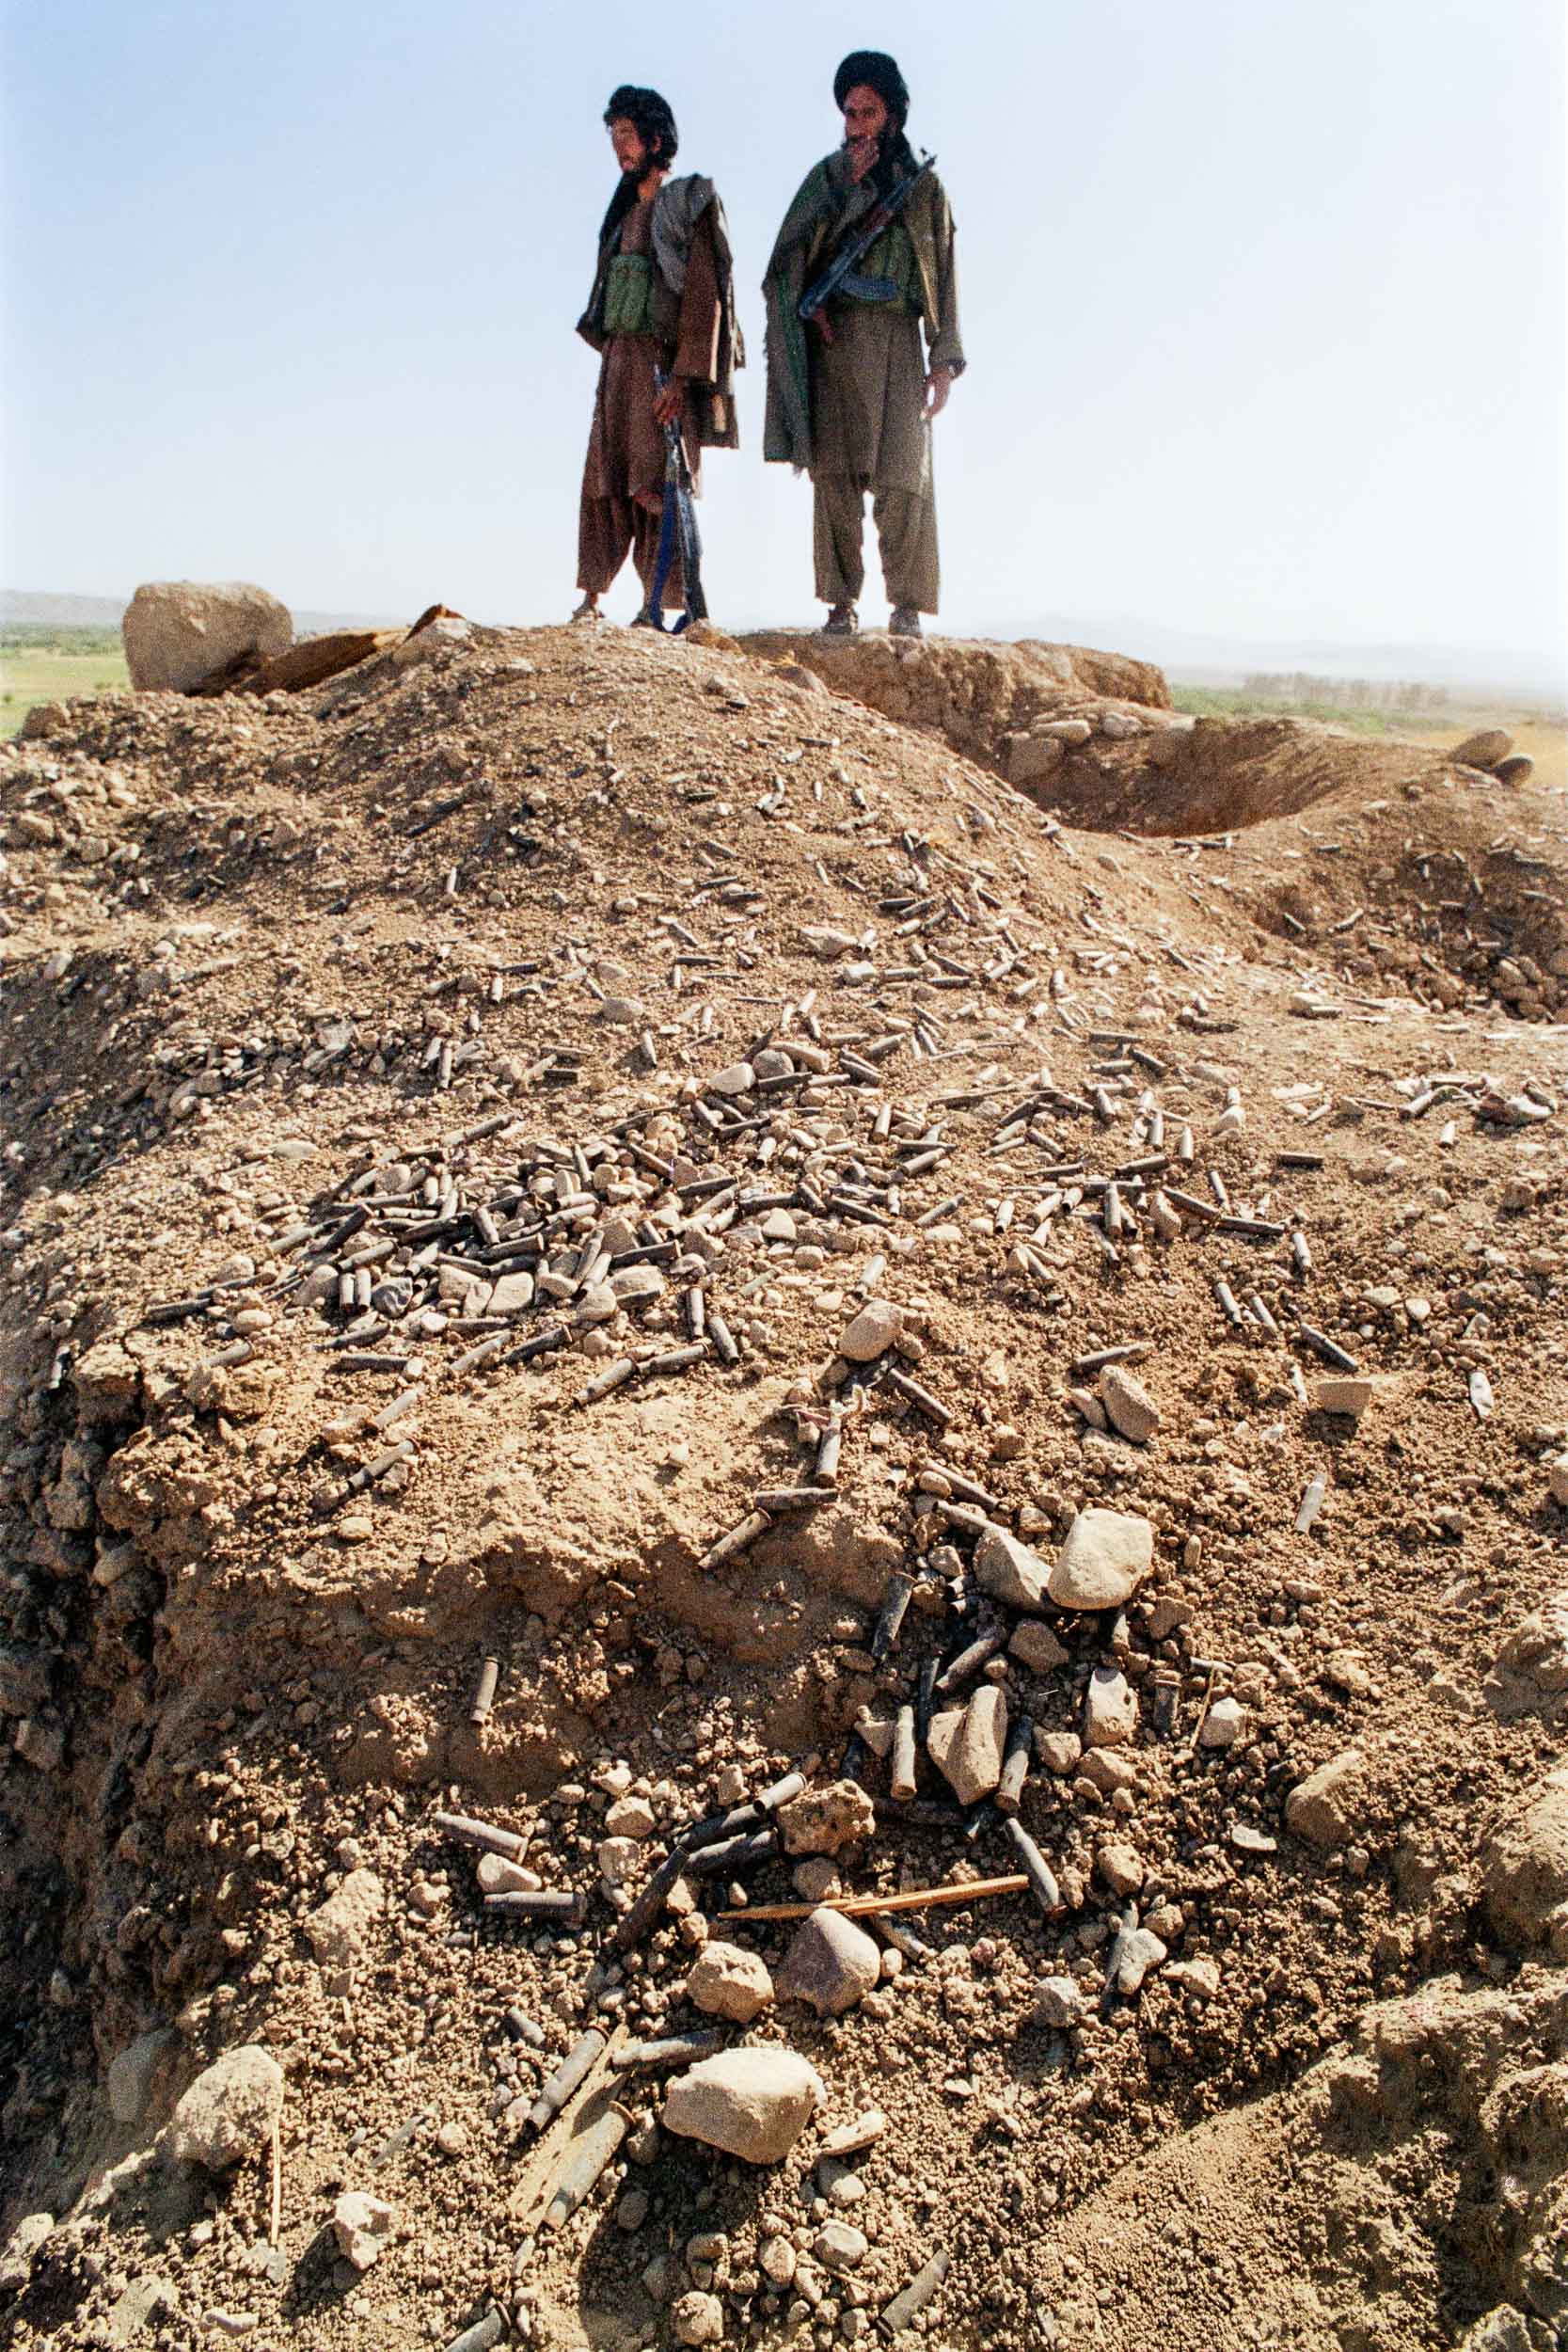  Mujahideen inspect ruins after a battle, Afghanistan 1988 